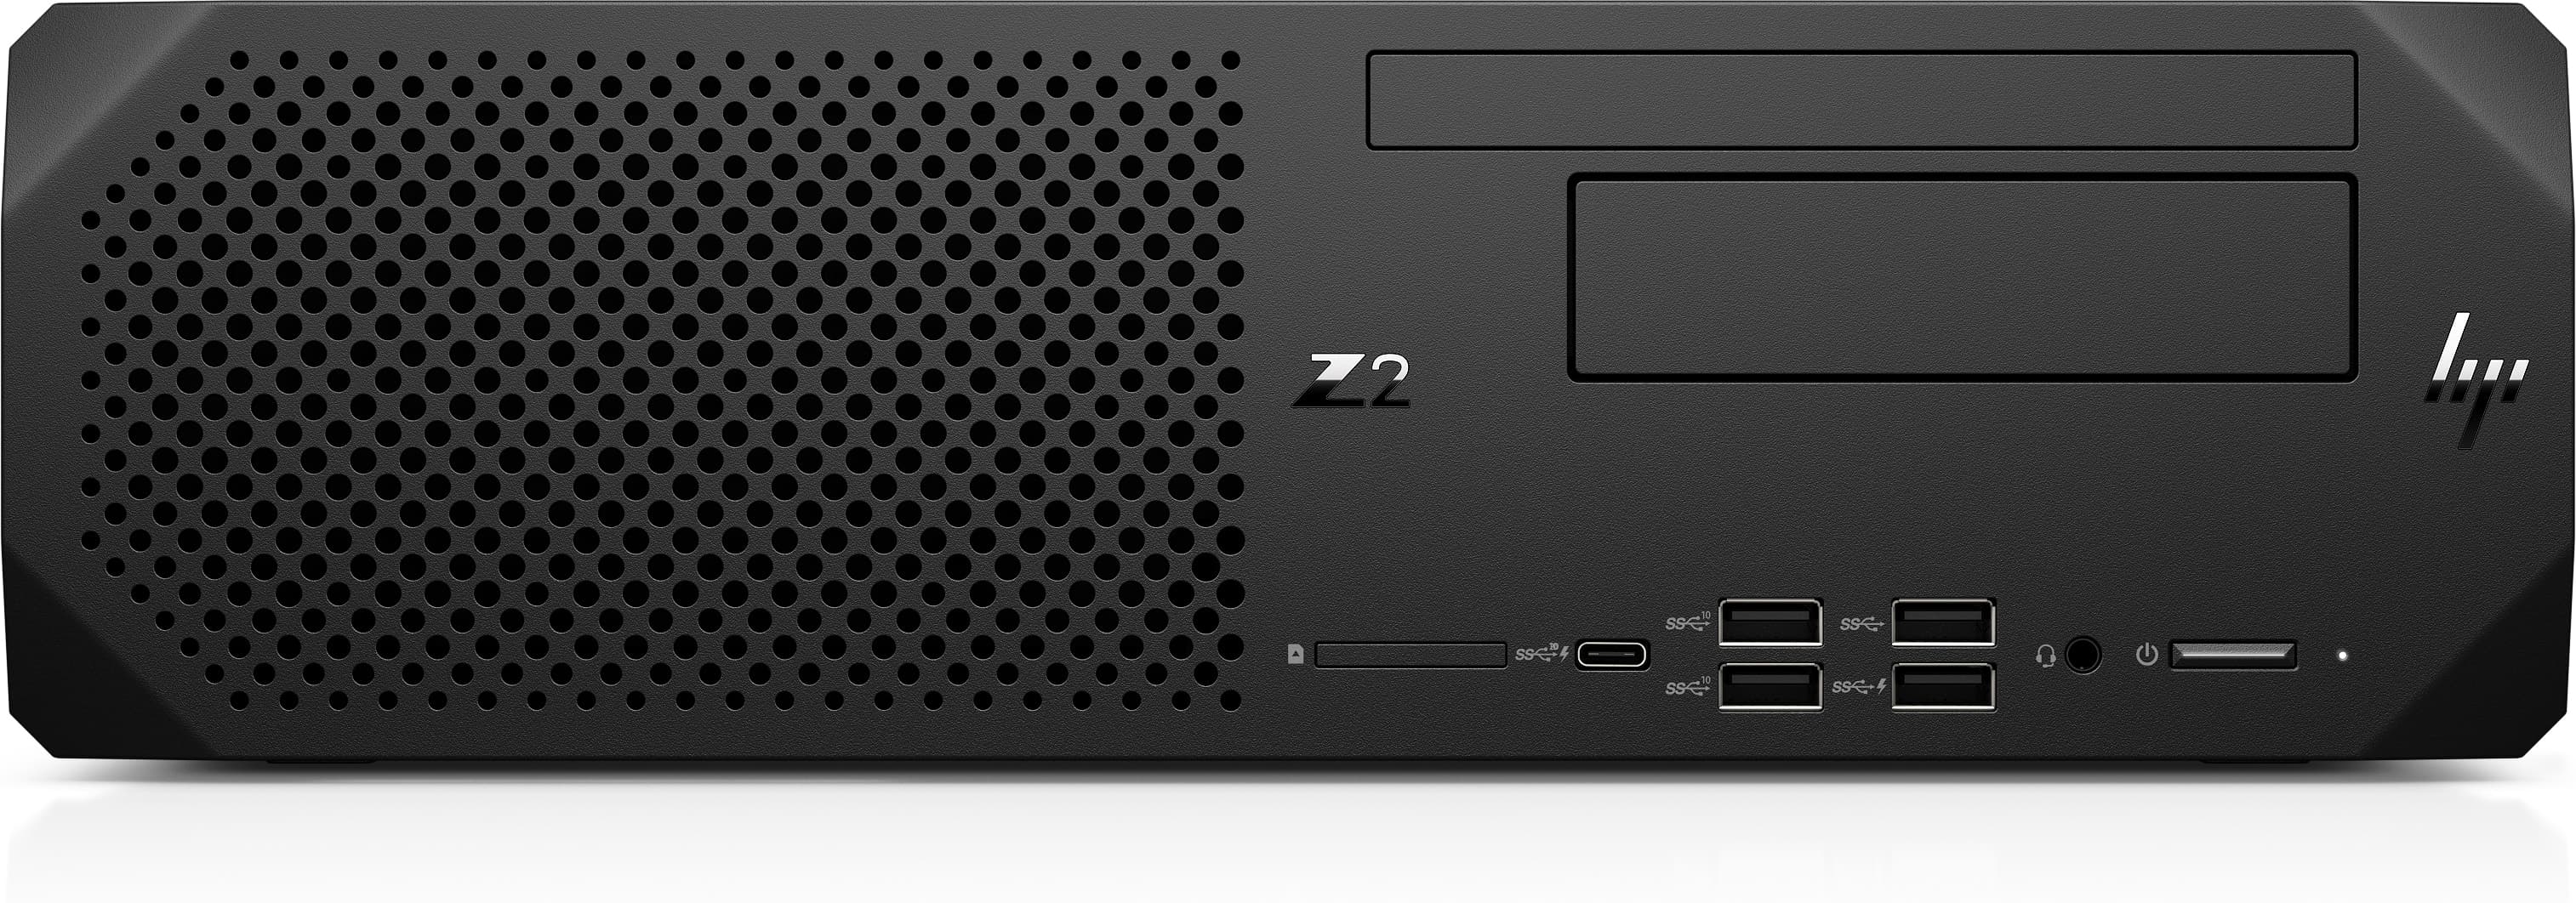 HP Z2 G8 SFF Workstation - 3,6 GHz - Intel® Core™ i7 Prozessoren der 11. Generation - 32 GB - 512 GB - DVD-RW - Windows 10 Pro